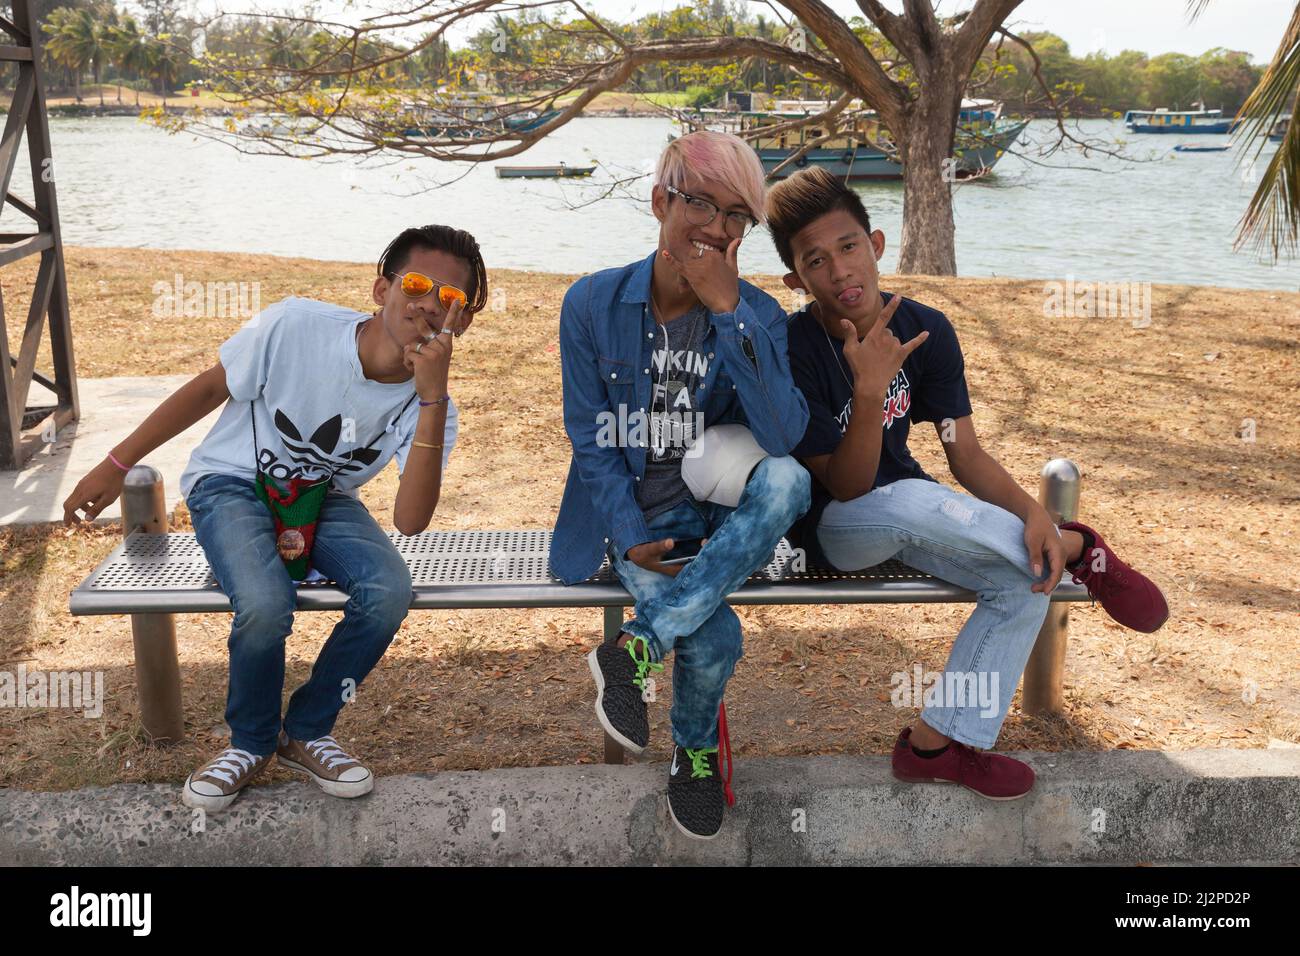 Kota Kinabalu, Malasia - 17 de marzo de 2019: Retrato de tres muchachos malayos positivos sentados en un banco en el parque público de Kota Kinabalu Foto de stock